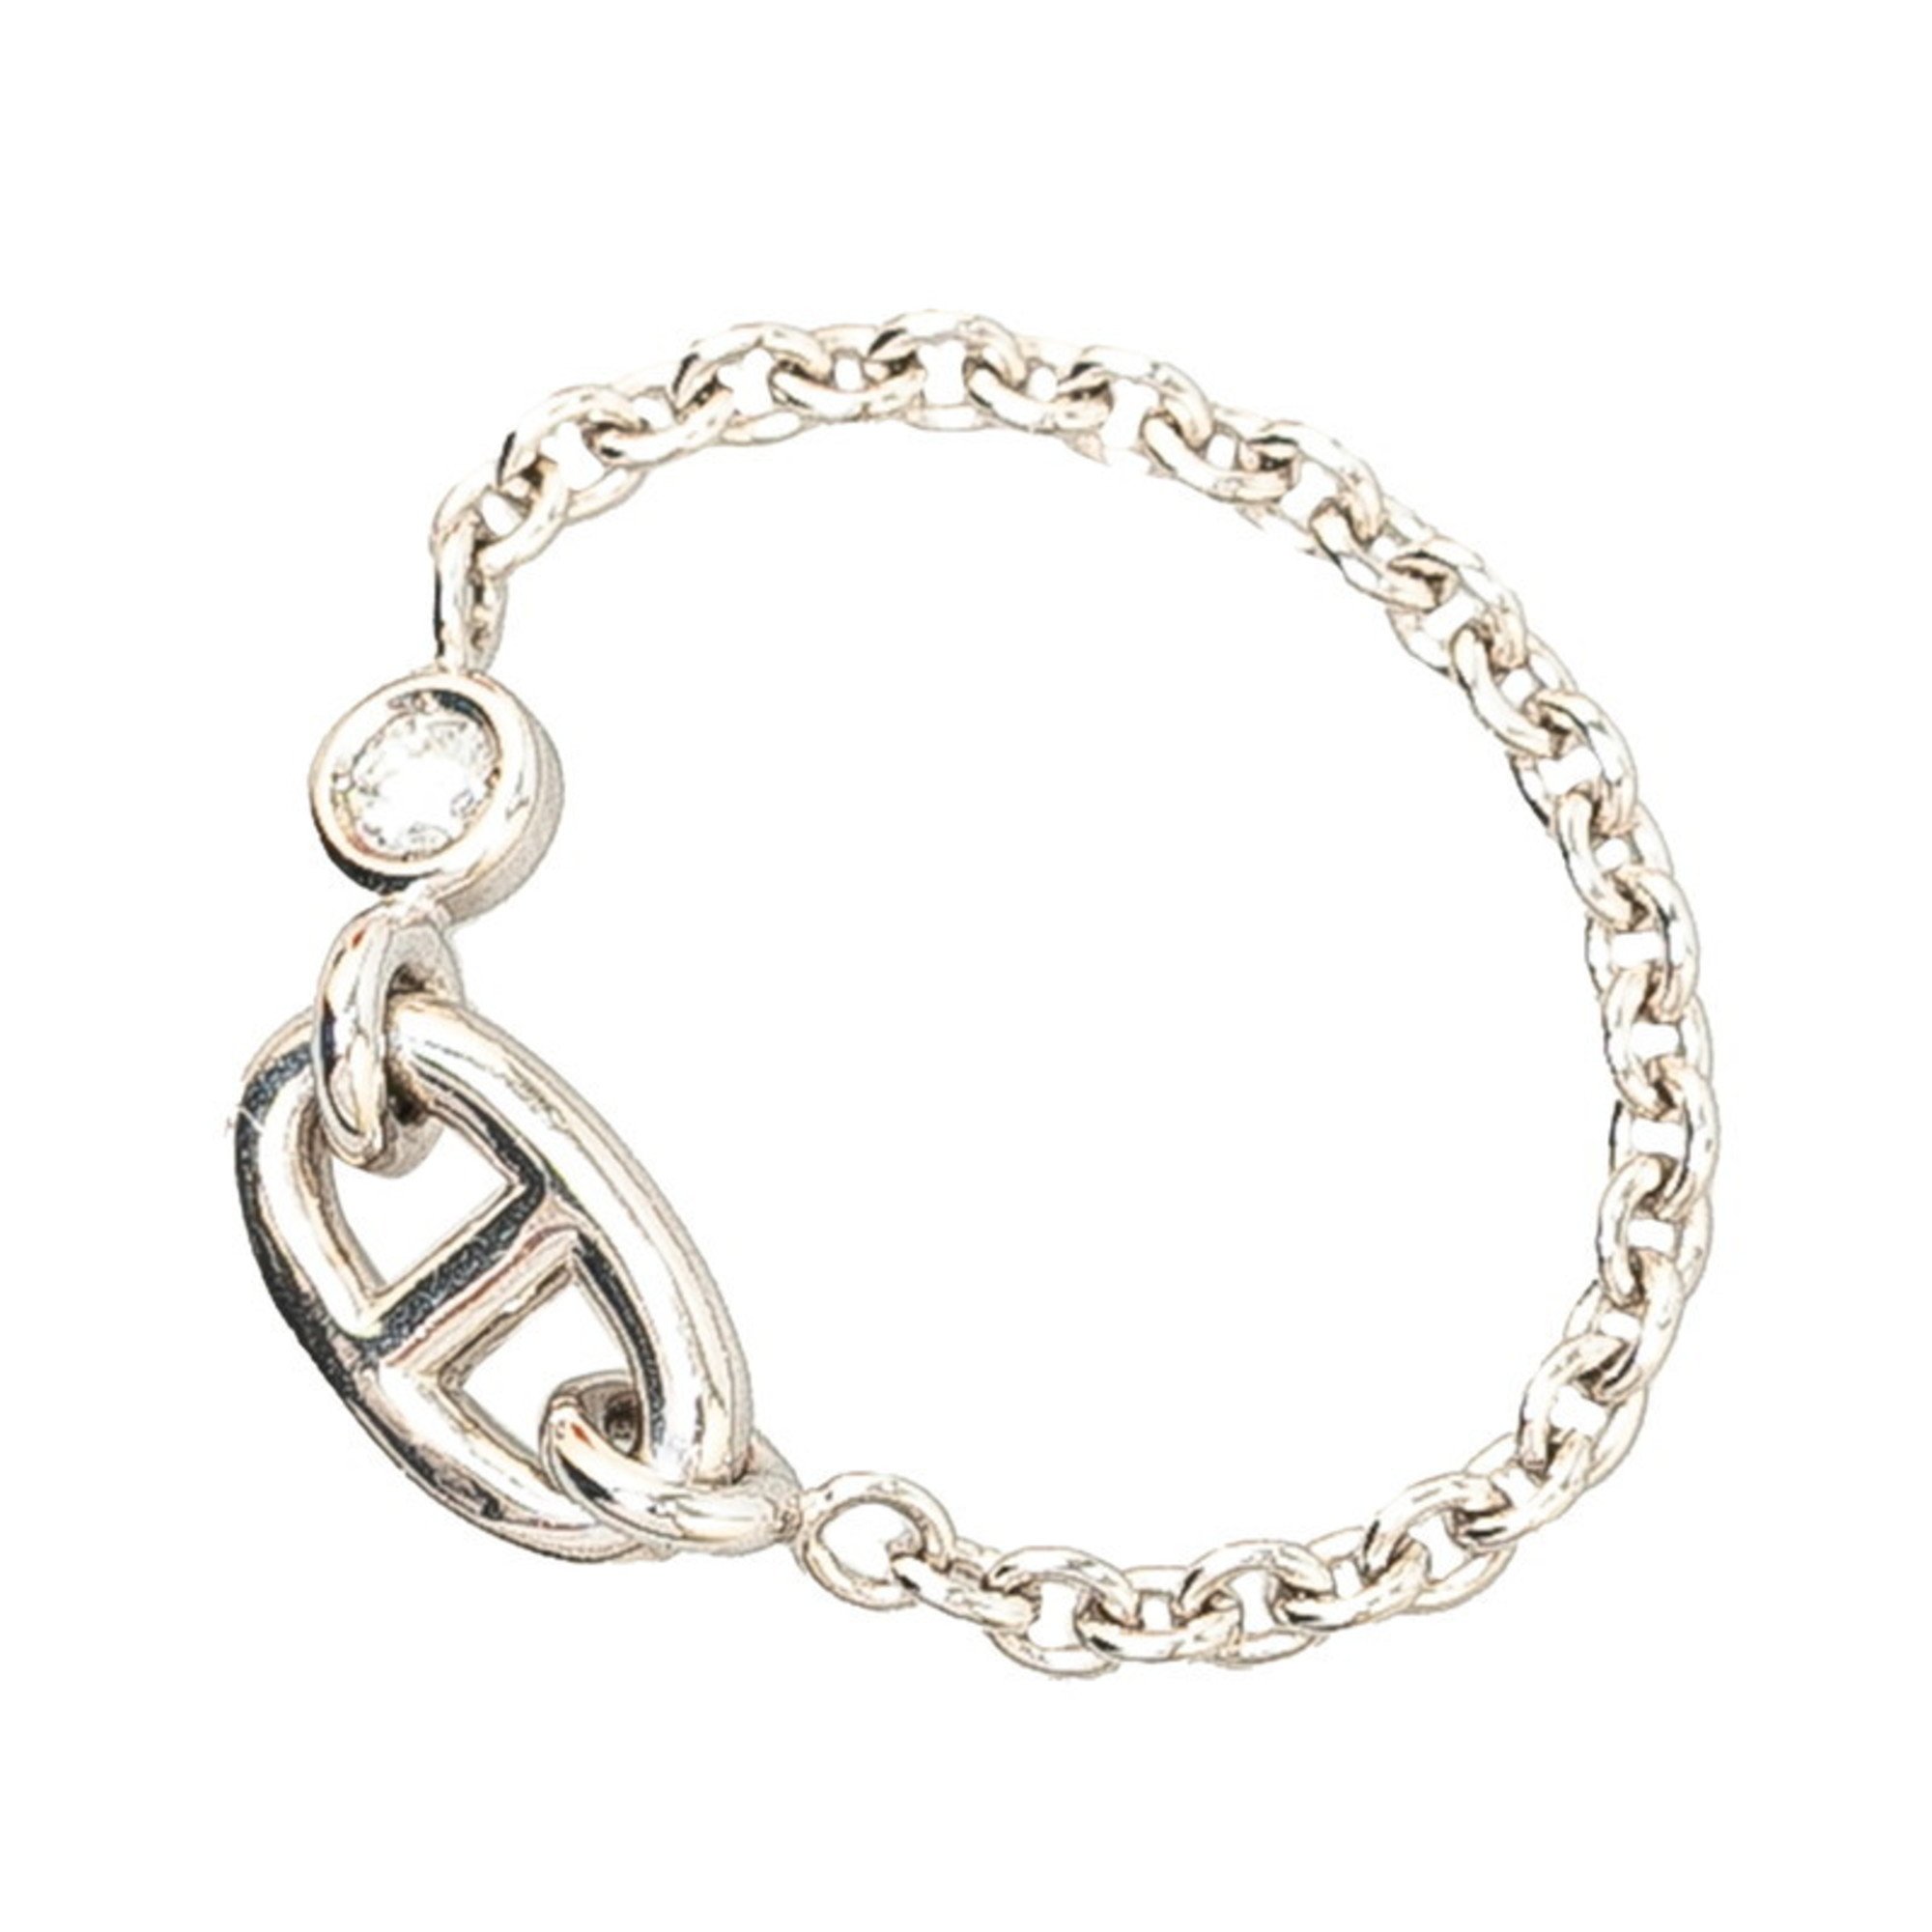 Hermes Chaine d'Ancre Chain Ring #50 K18WG White Gold Women's HERMES